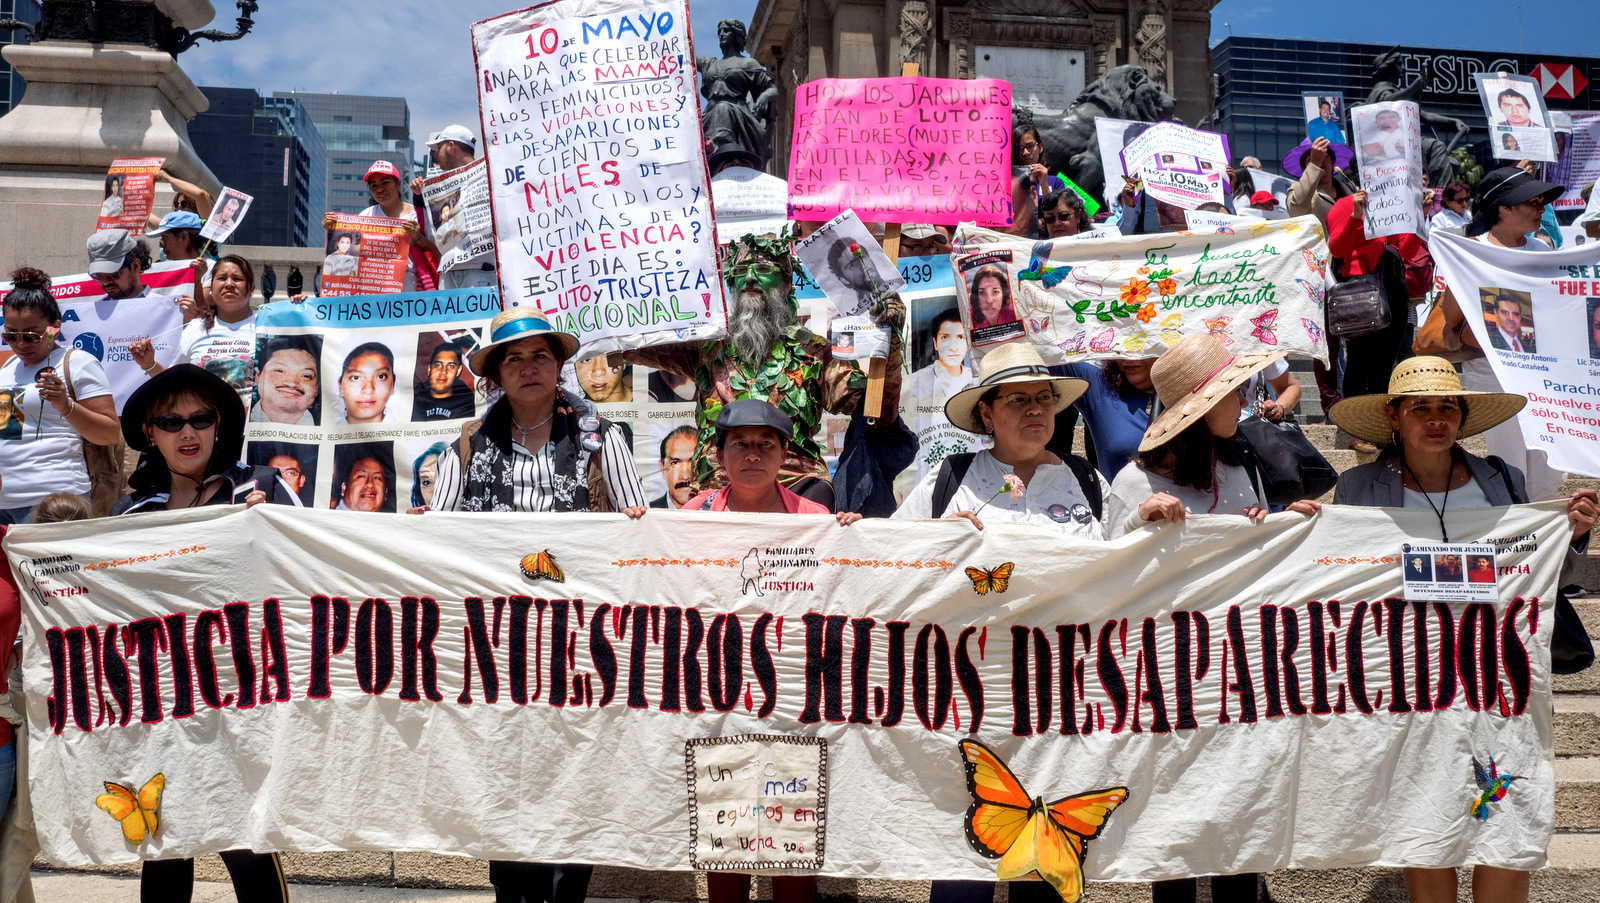 Mujeres sostienen un cartel que dice 'Justicia para nuestros hijos desaparecidos' en el Día de la Madre para exigir justicia para sus hijos desaparecidos, Ciudad de México, 10 de mayo de 2018 (Foto: José Luis Granados Ceja)